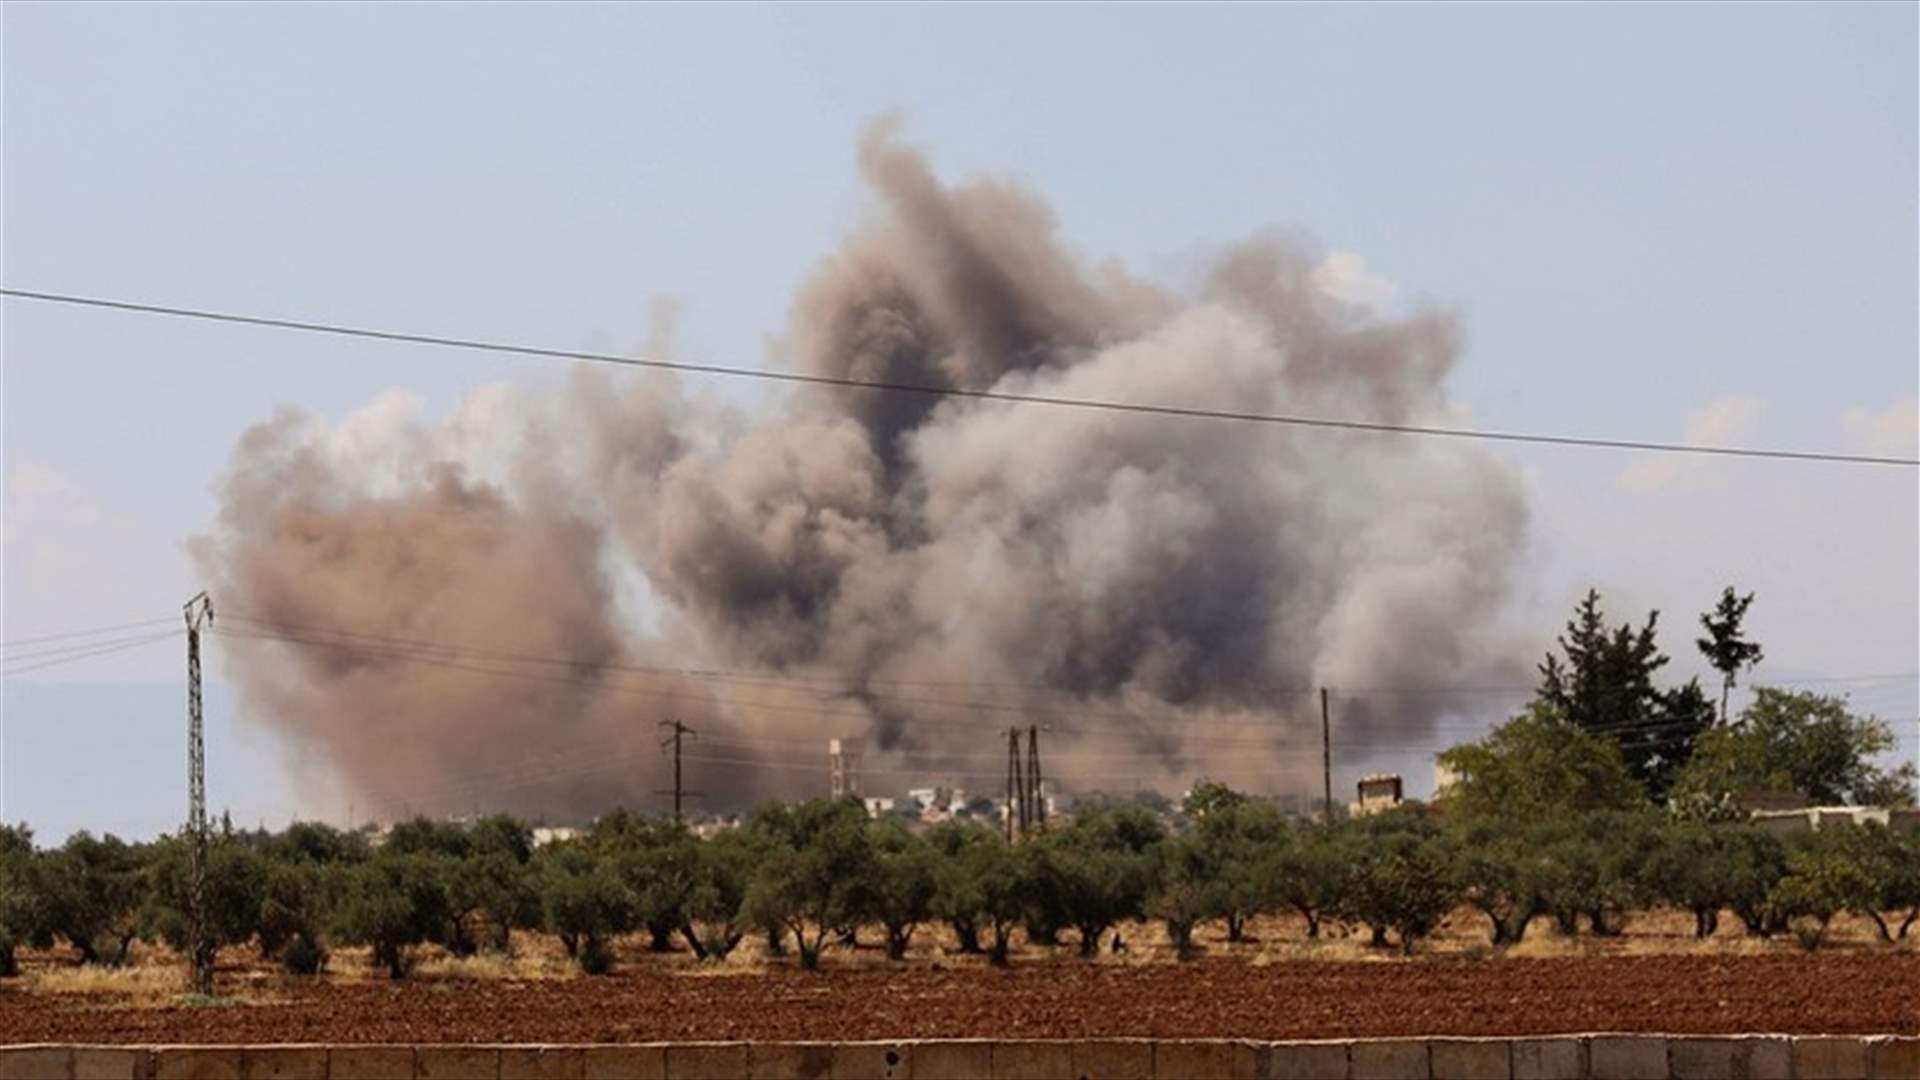 At least 17 killed in blast in Syria&#39;s rebel-held Jisr al Shughour - rescue workers